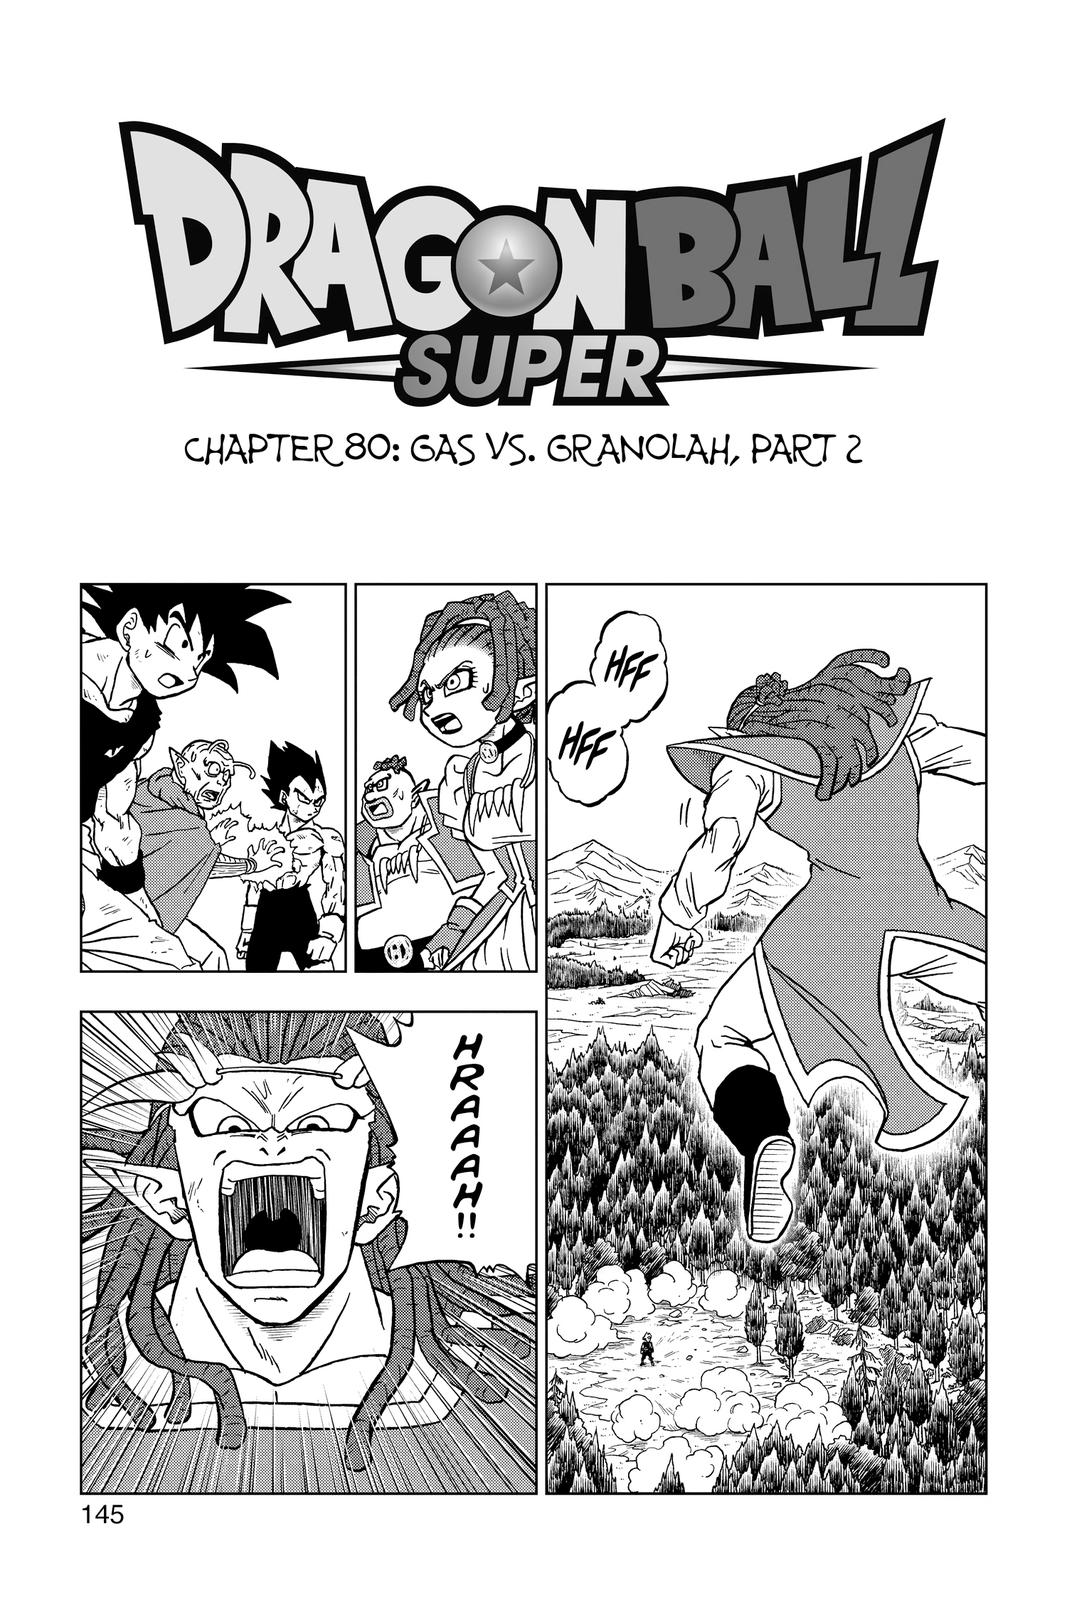 Dragon Ball Super - Capítulo 80 - Gas vs Granola (2)